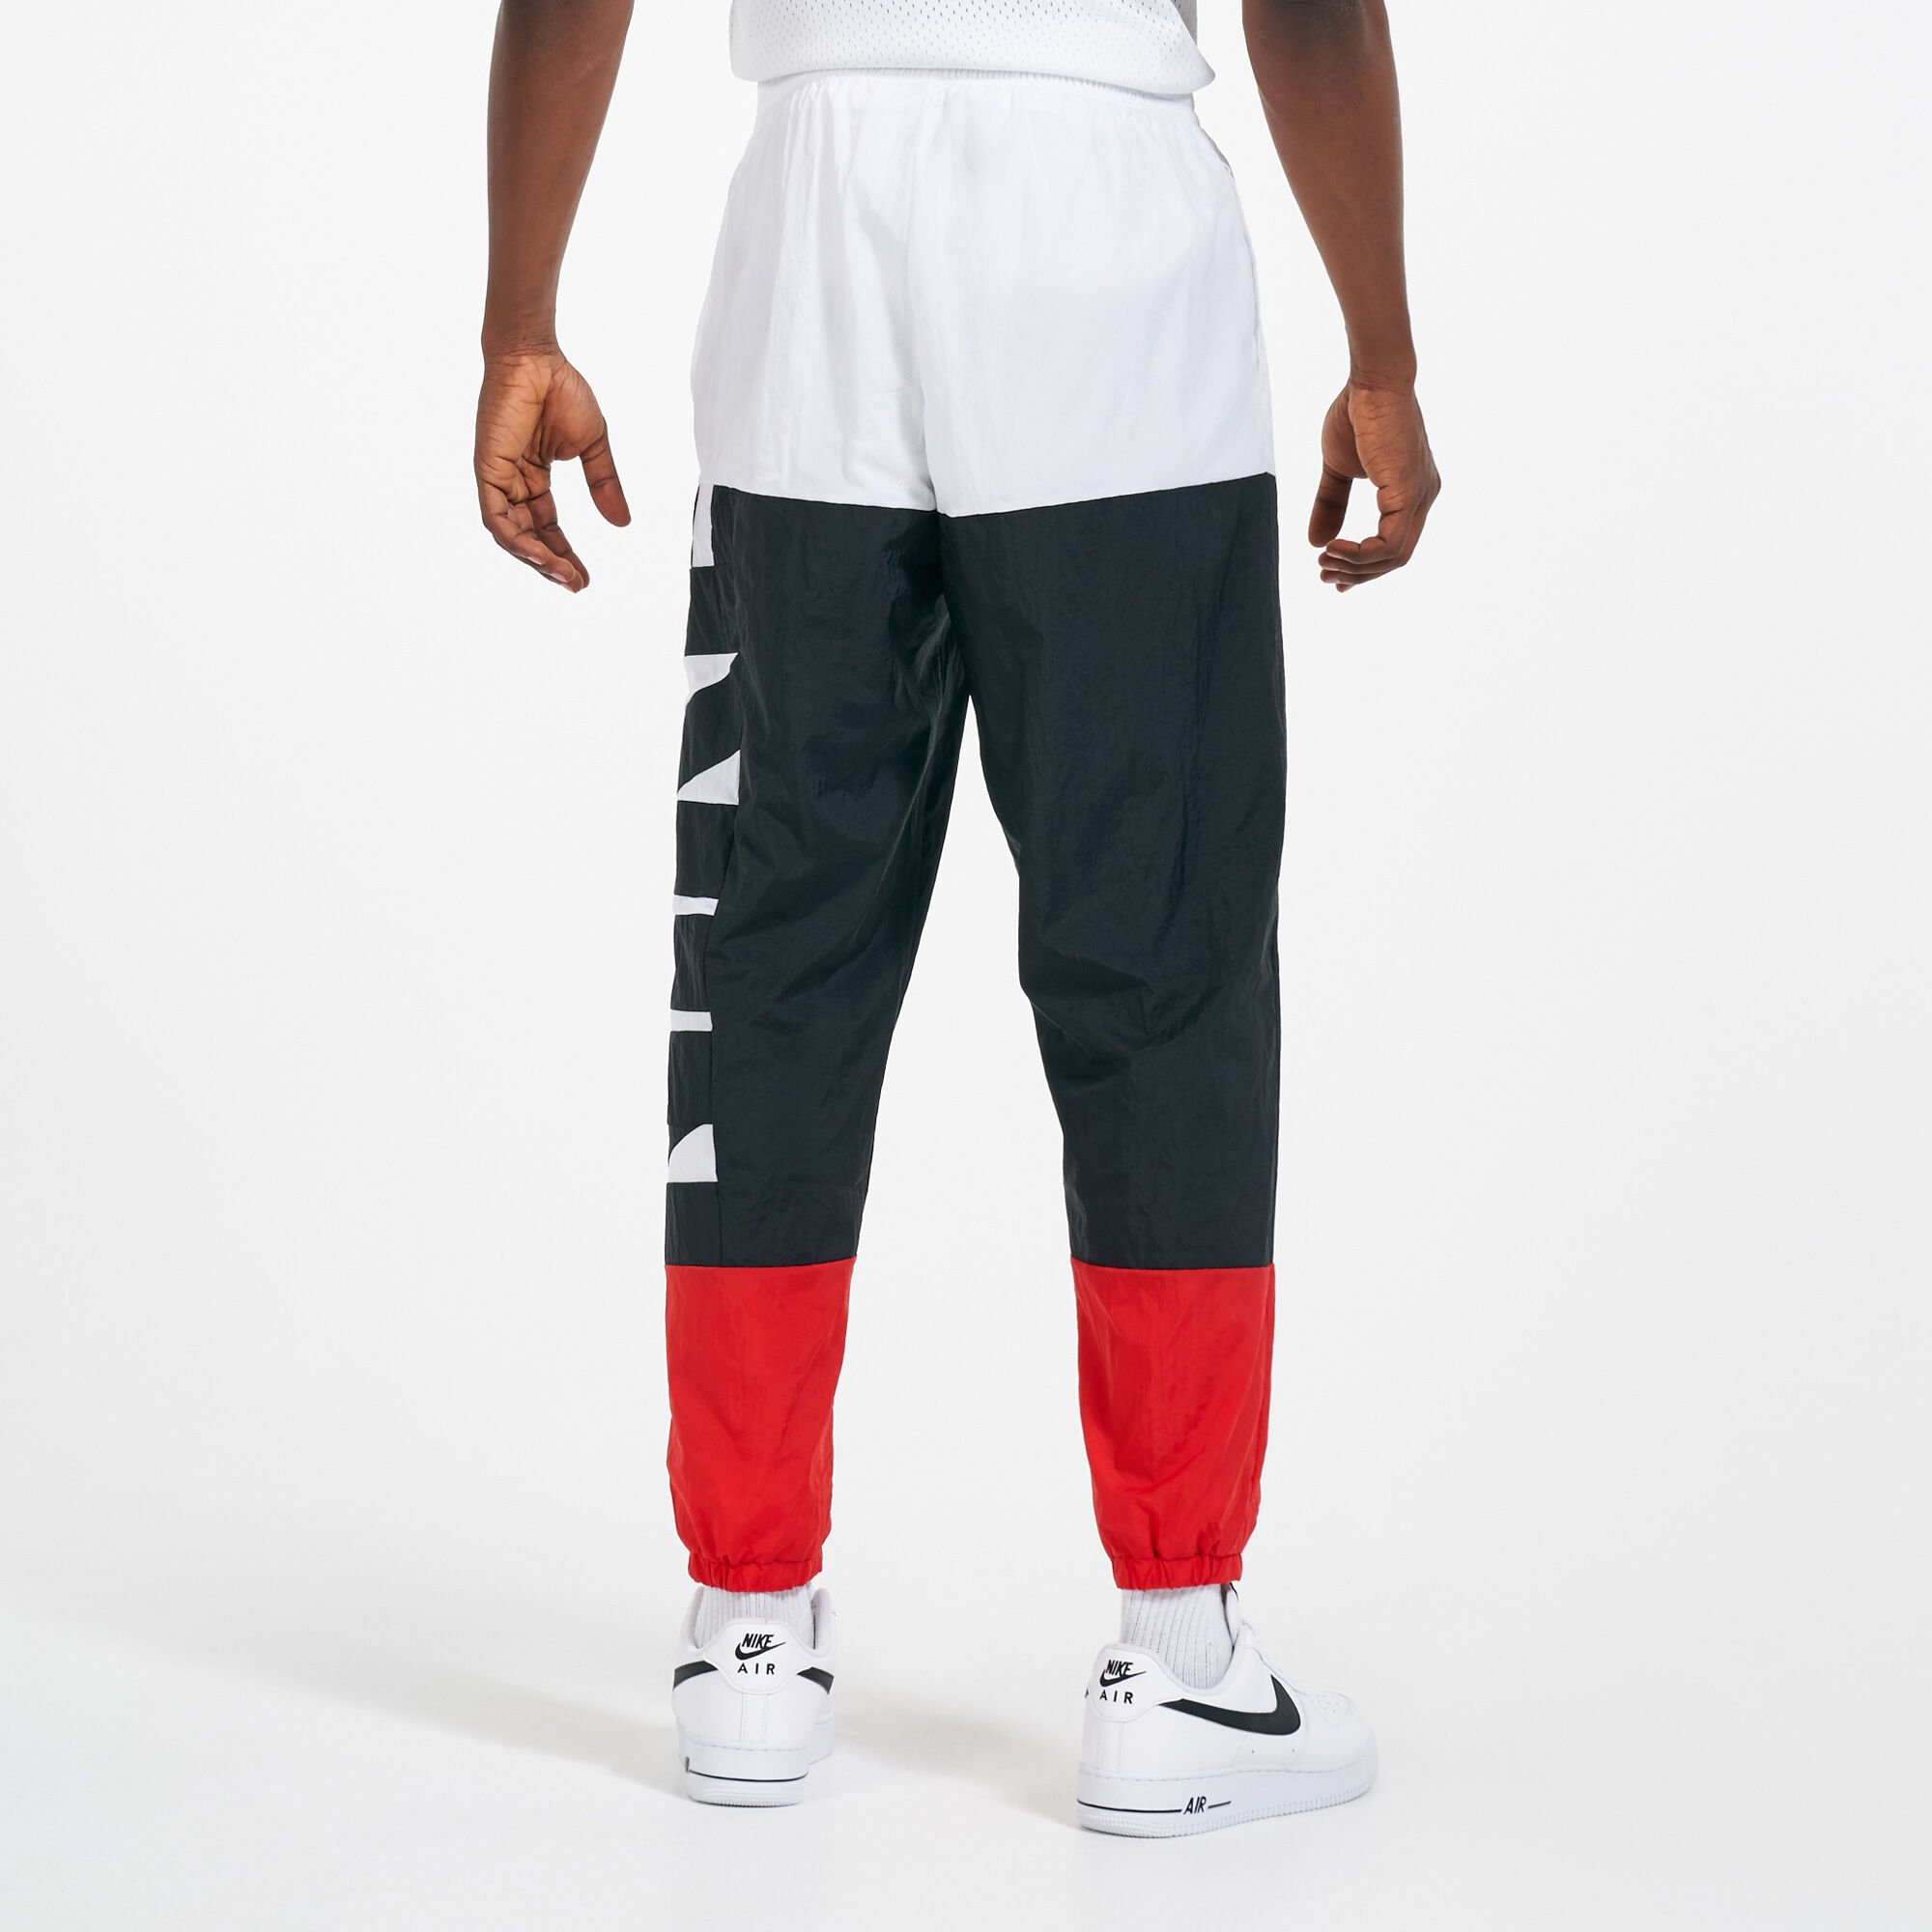 Nike Tech Fleece Training Trousers, Obsidian Heather/Black